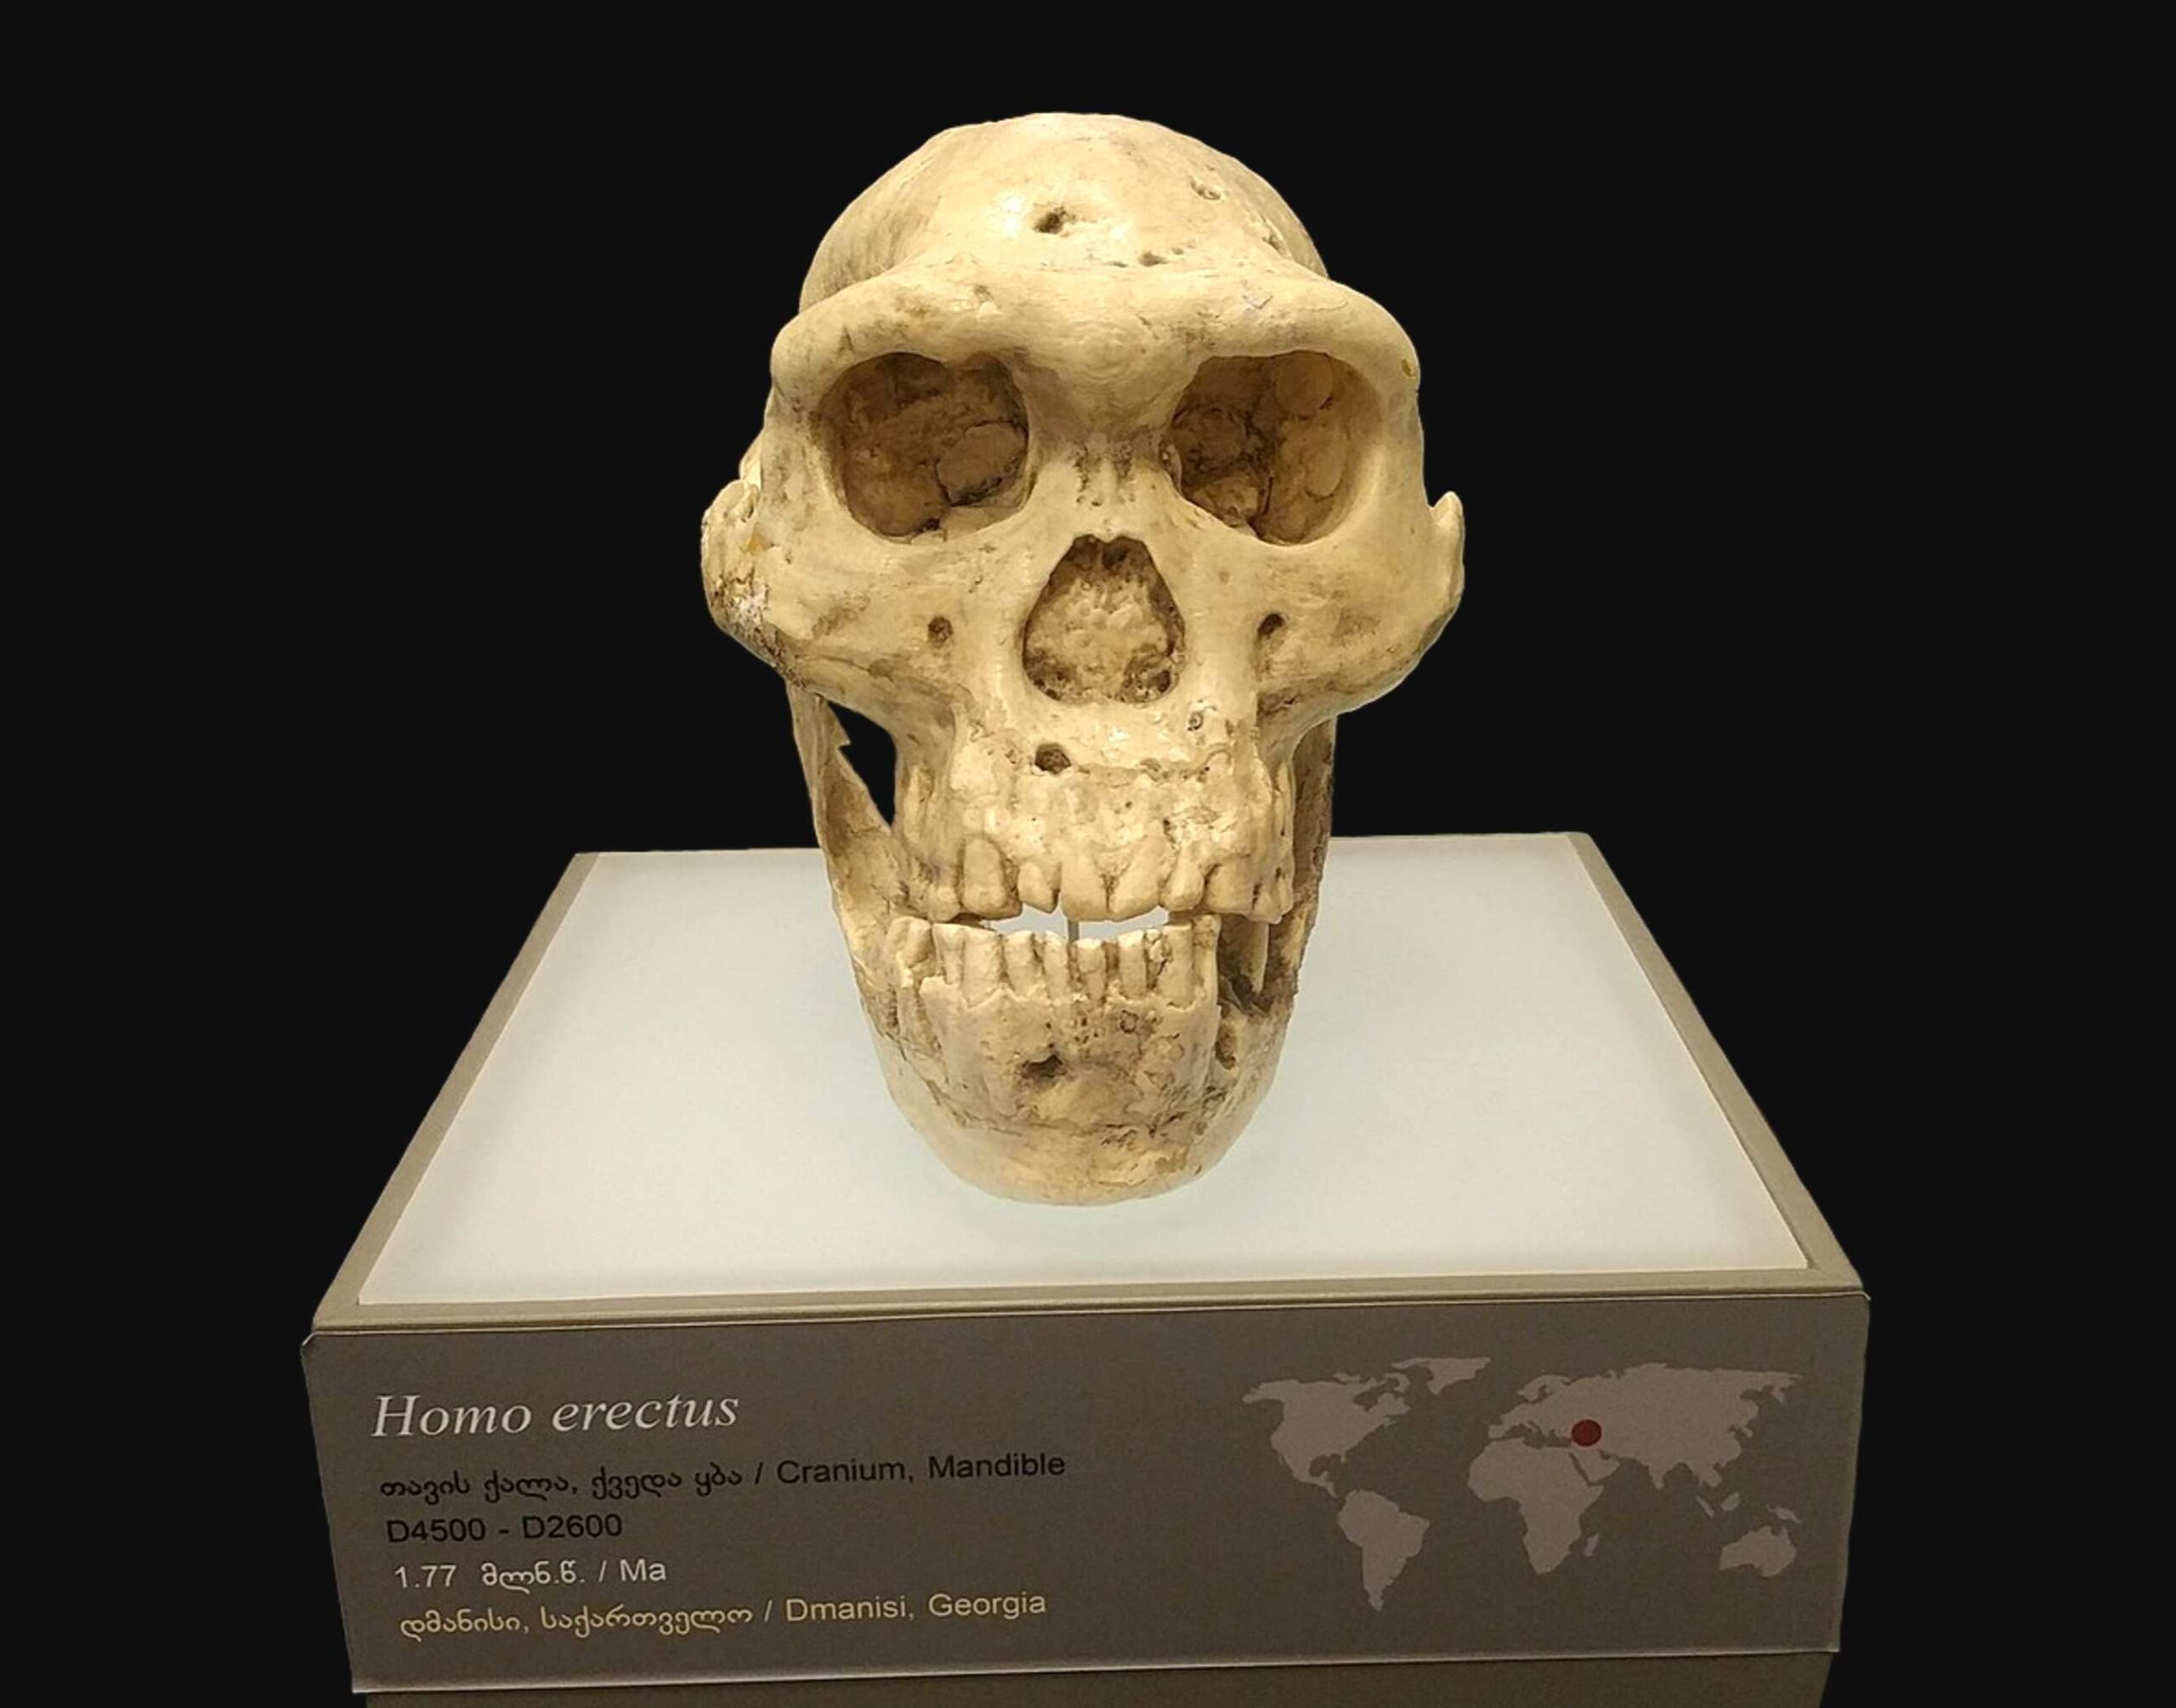 جمجمه 5 - جمجمه انسان با قدمت یک میلیون سال دانشمندان را مجبور به تجدیدنظر در مورد تکامل اولیه انسان کرد 2